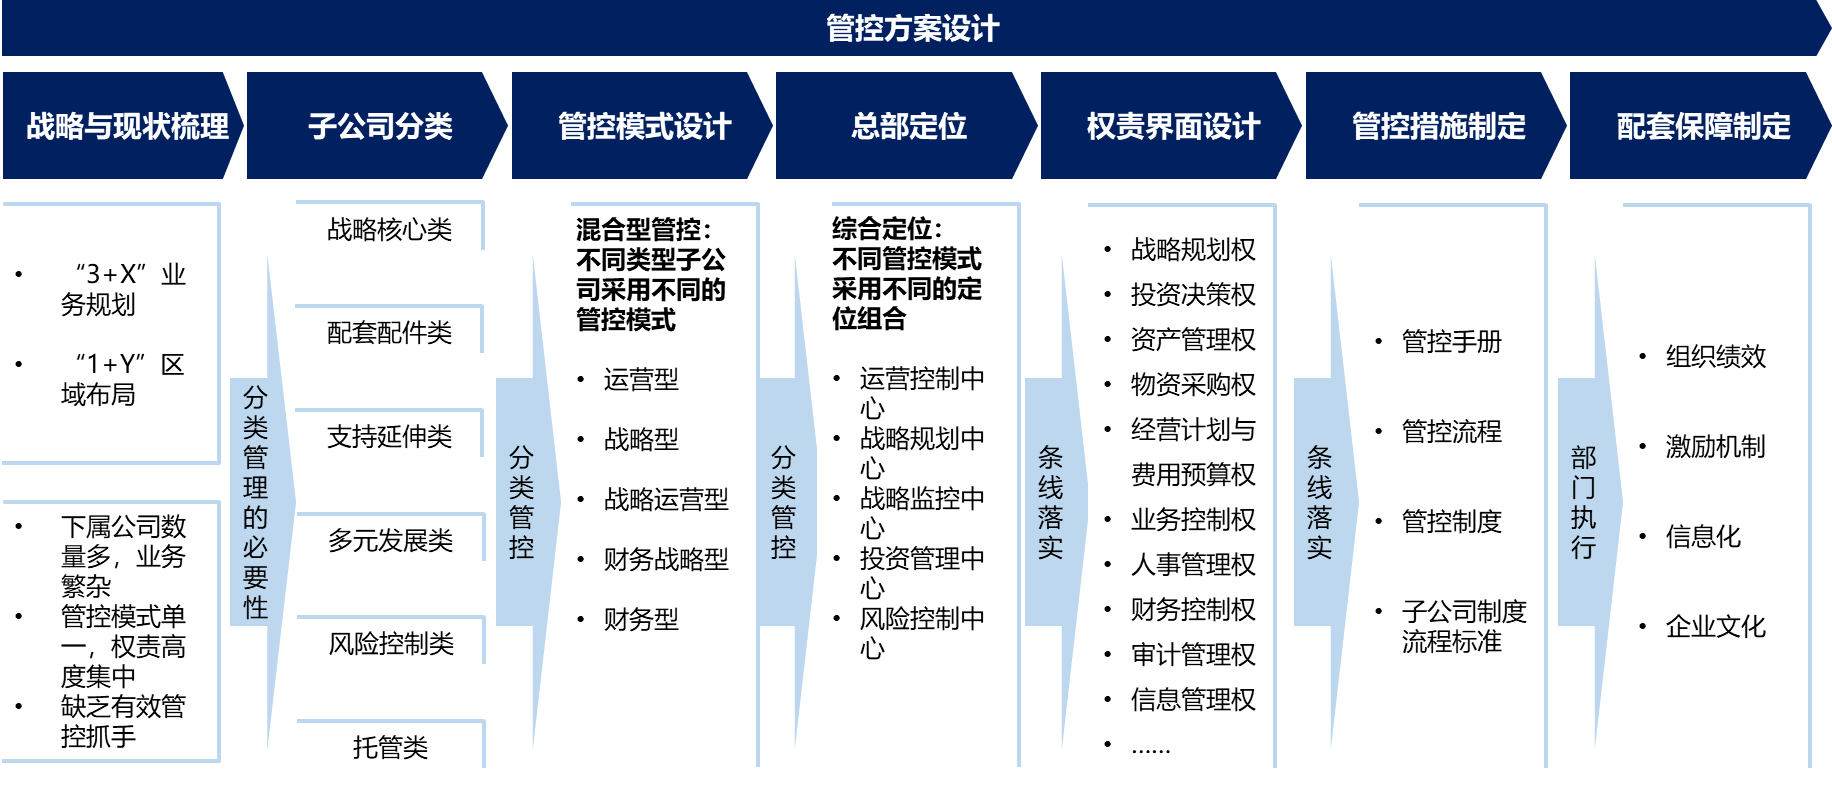 图2 中车株机母子公司管控设计路径